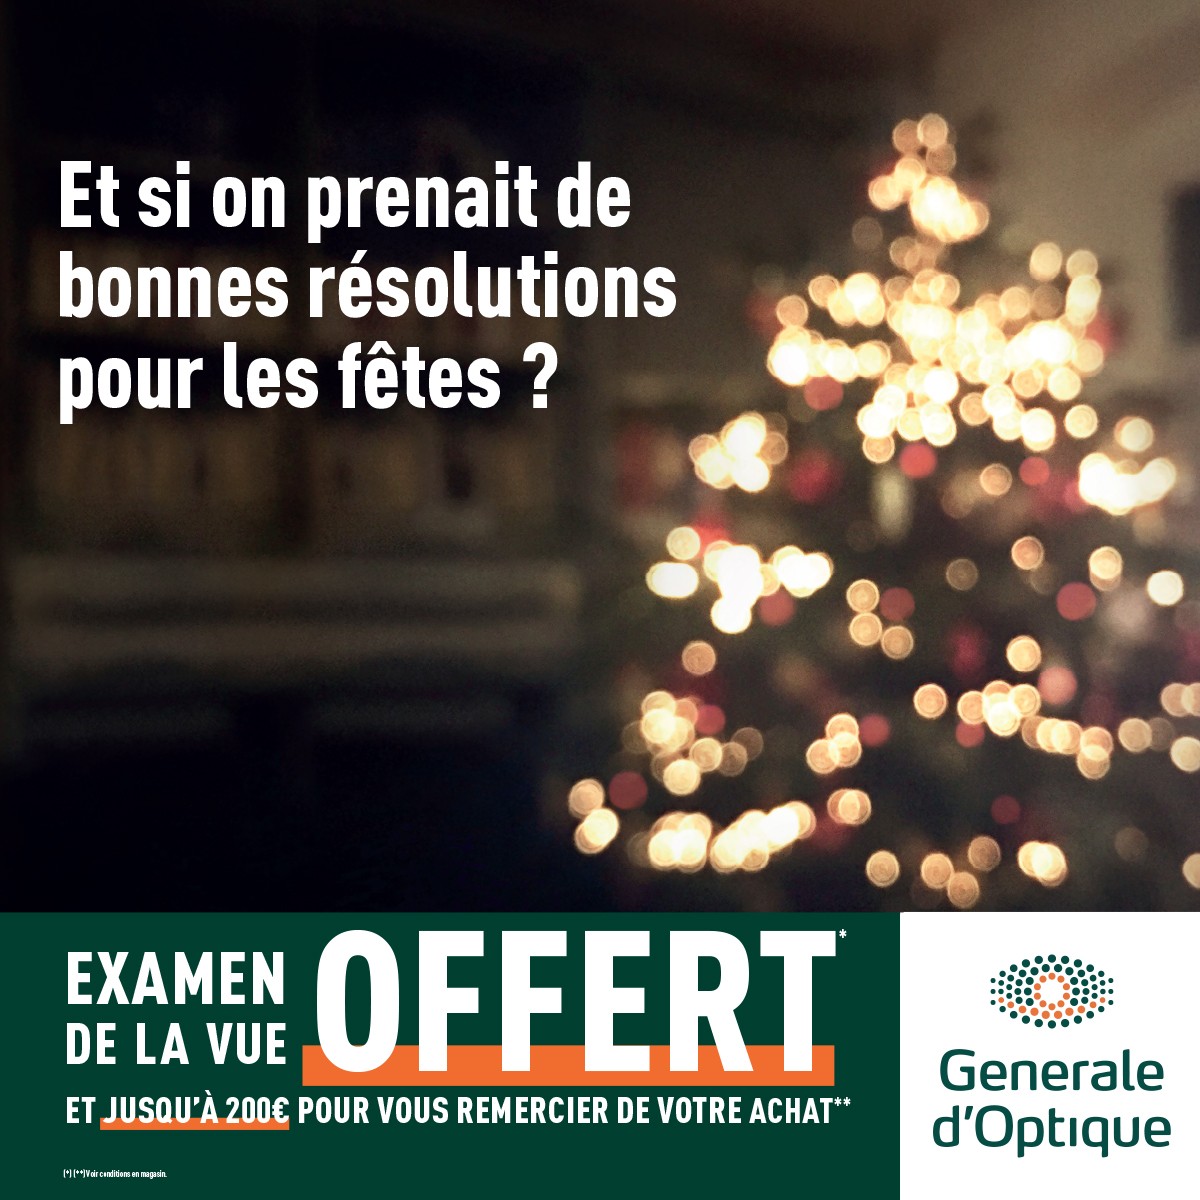 Green 7 - Offres chez Générale d'Optique ! - cd2dd780 03be 4635 9ae6 524ceafc827e - 1